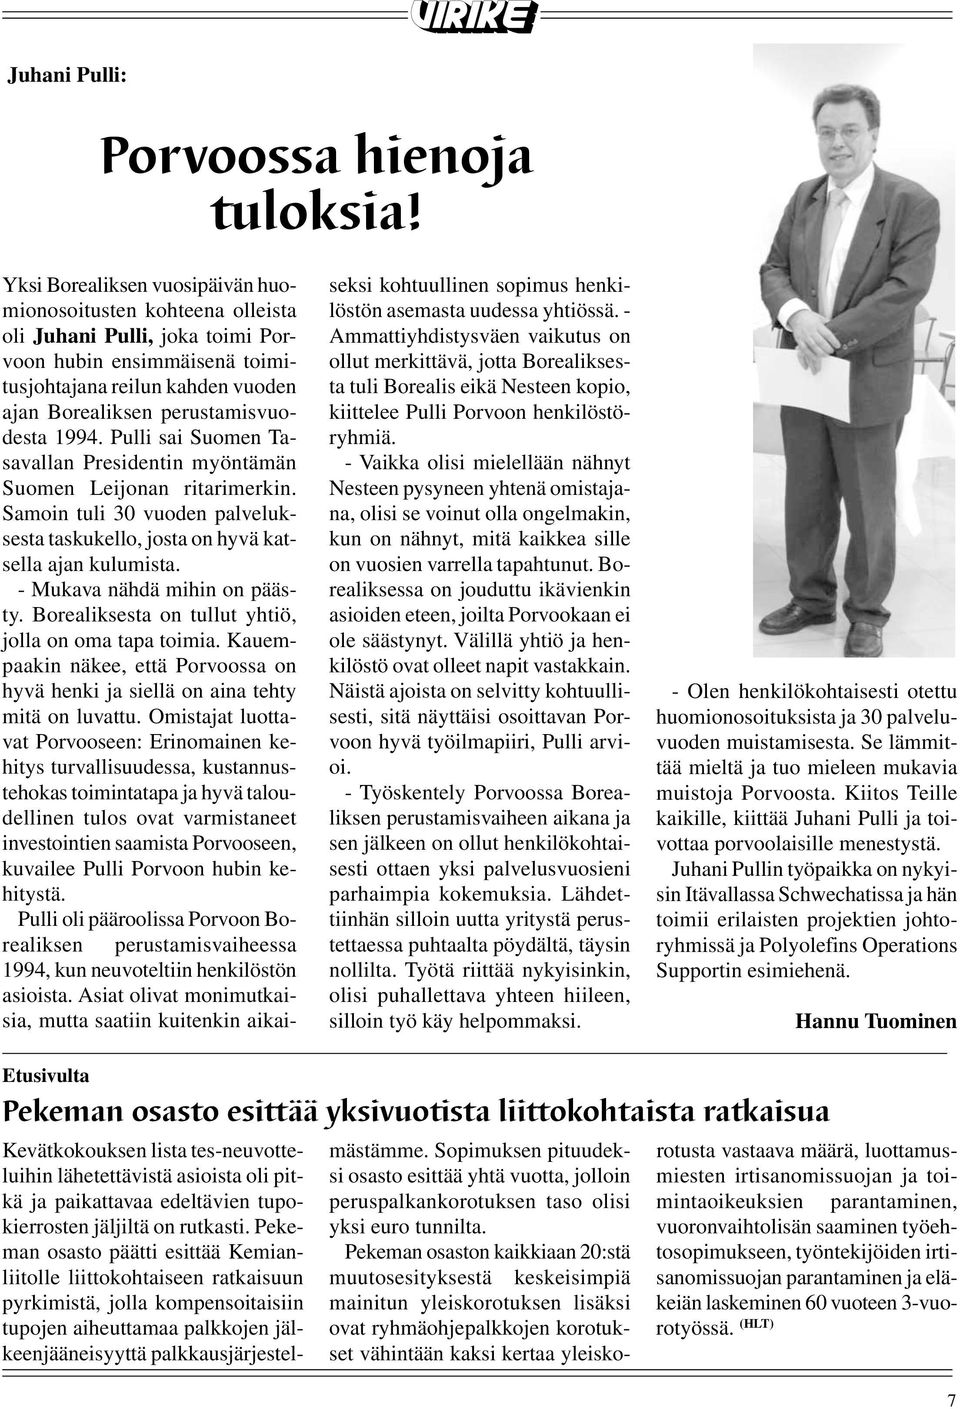 1994. Pulli sai Suomen Tasavallan Presidentin myöntämän Suomen Leijonan ritarimerkin. Samoin tuli 30 vuoden palveluksesta taskukello, josta on hyvä katsella ajan kulumista.